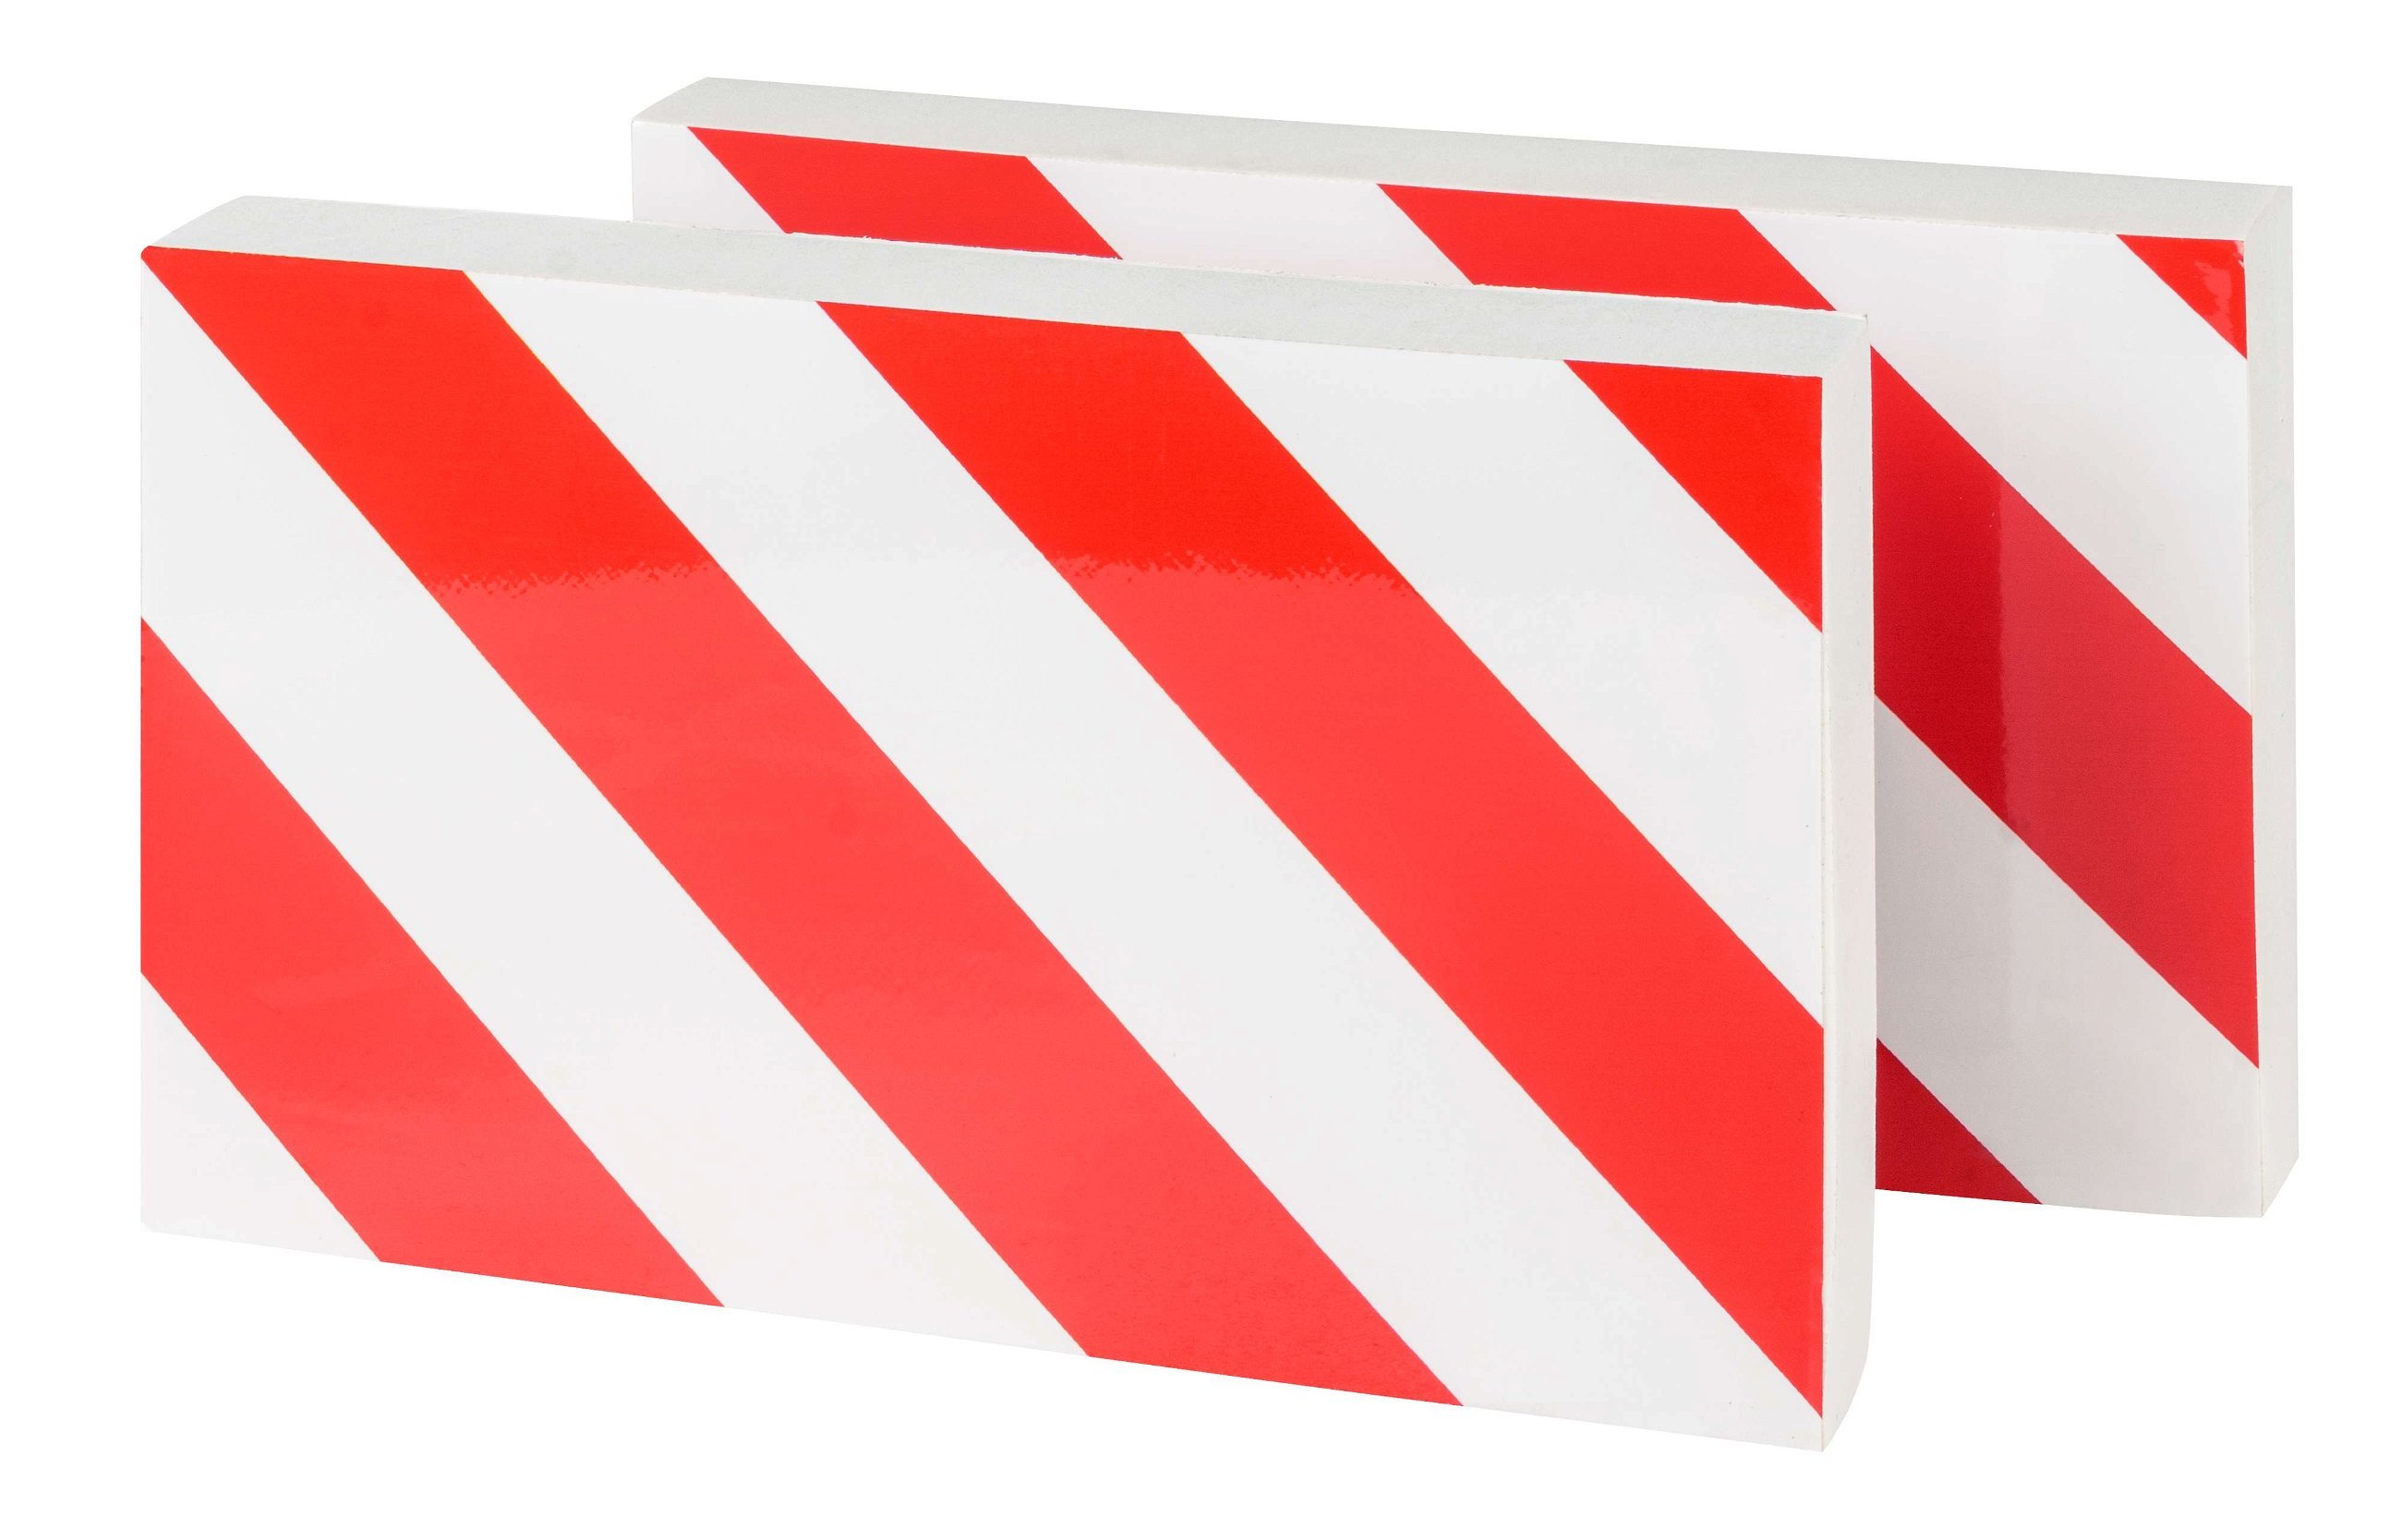 Garage wandbescherming, 2 stuks Autoportier randbescherming zelfklevend 32x20x4 cm rood/wit